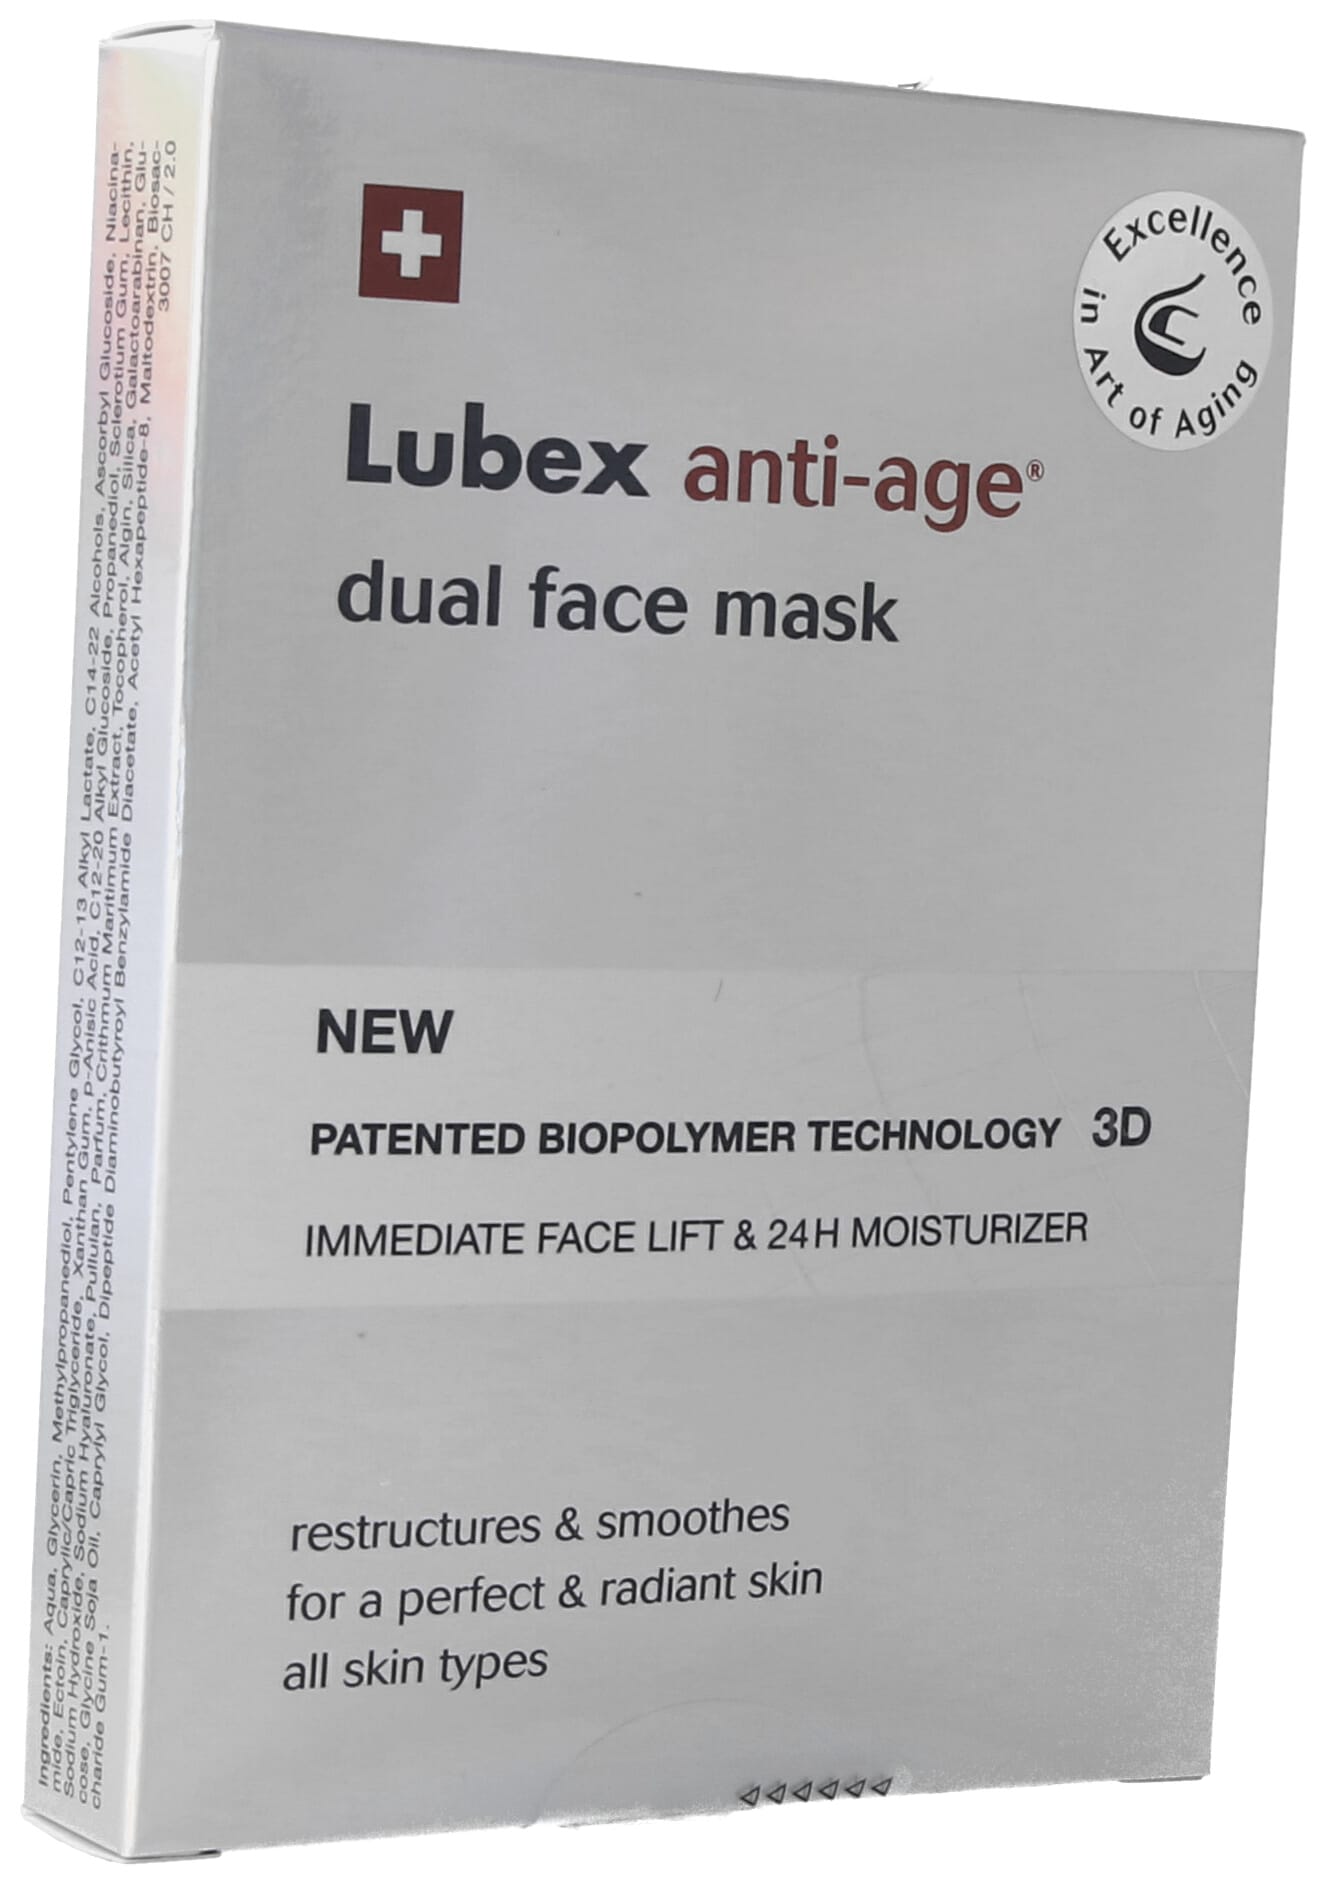 LUBEX ANTI-AGE dual face mask Btl 4 Stk